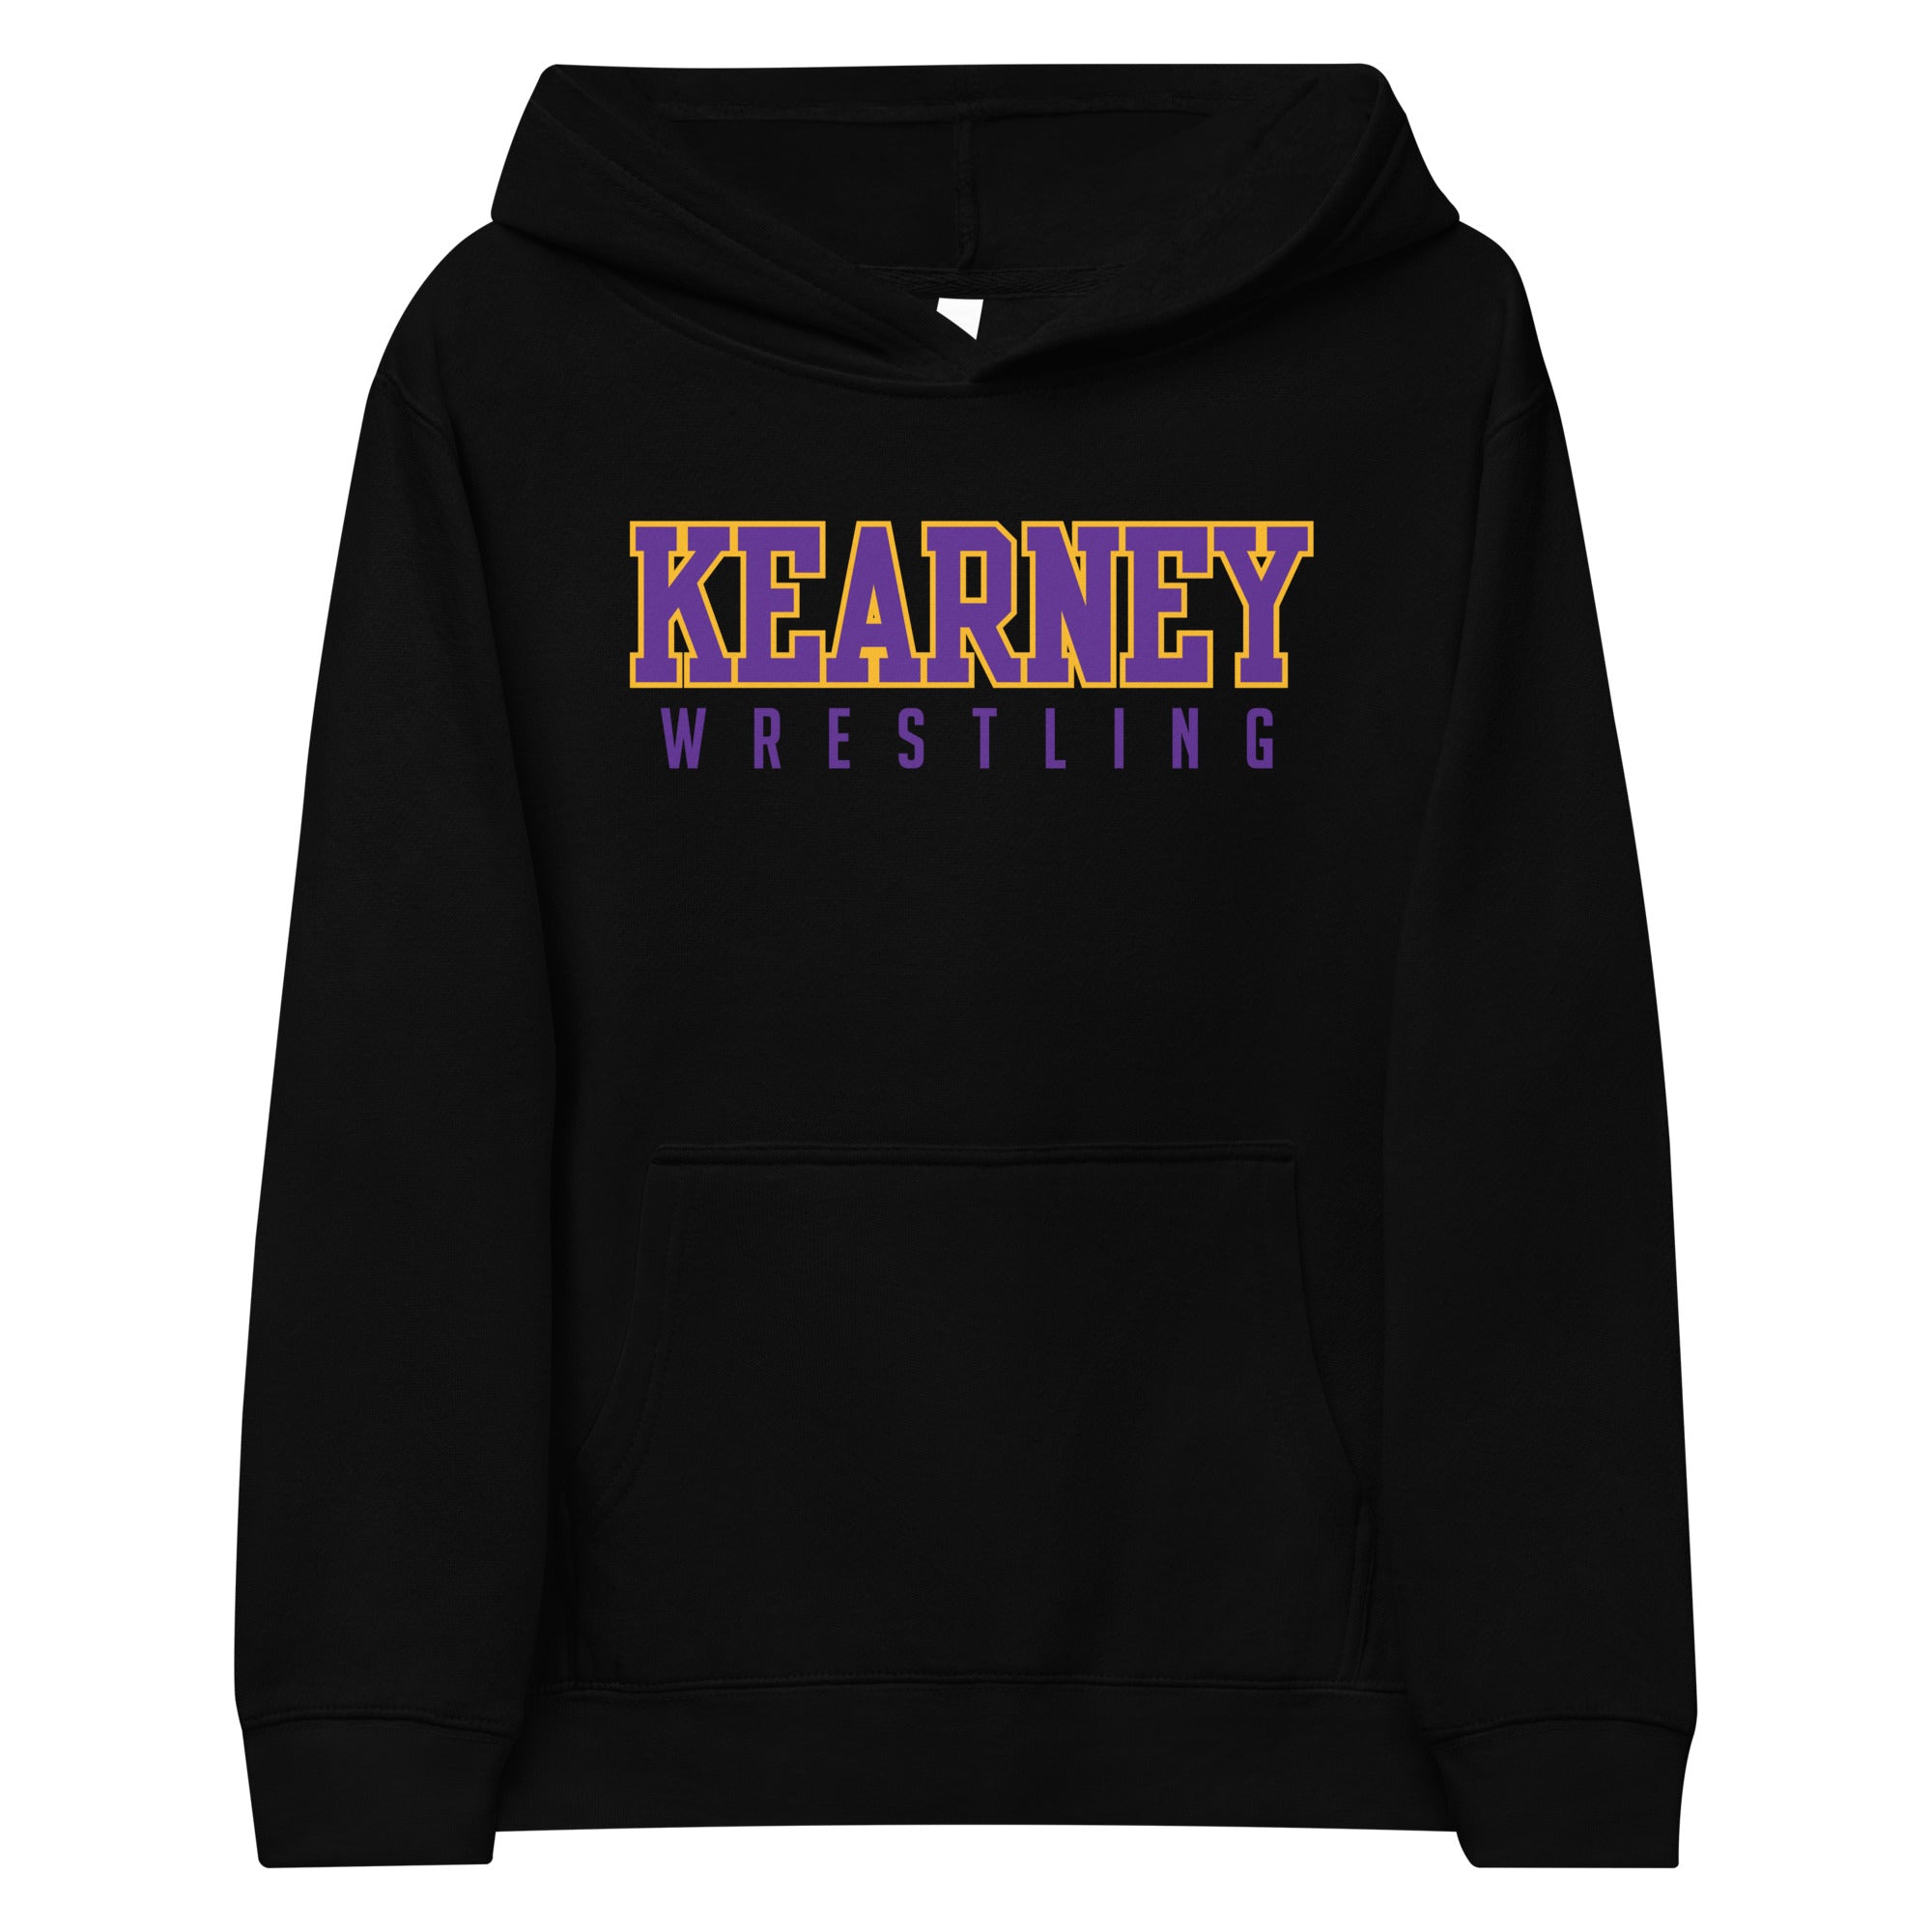 Kearney High School Wrestling Kids fleece hoodie